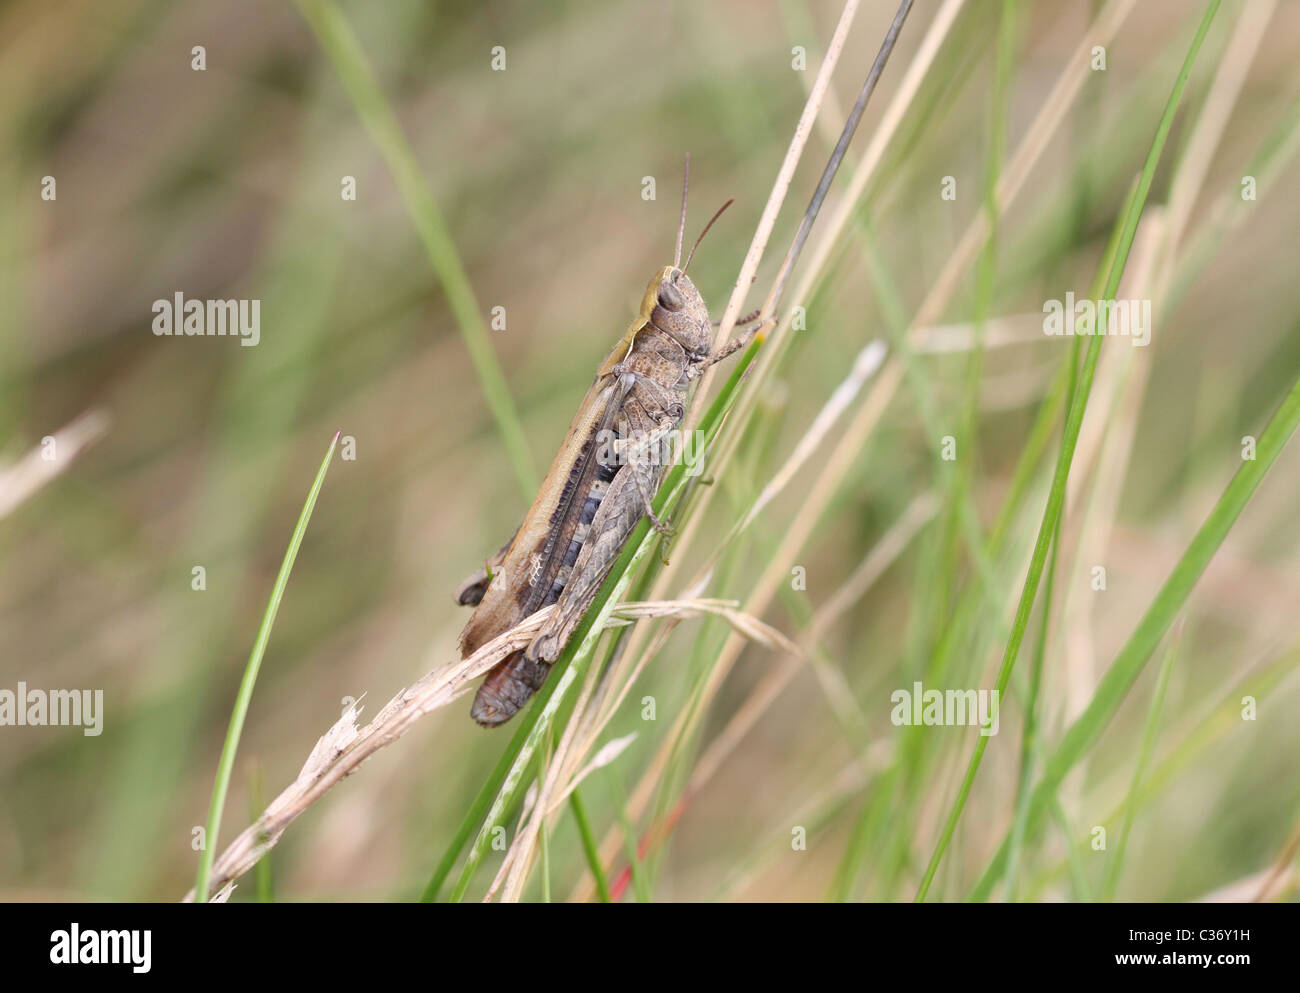 Common Field Grasshopper Stock Photo